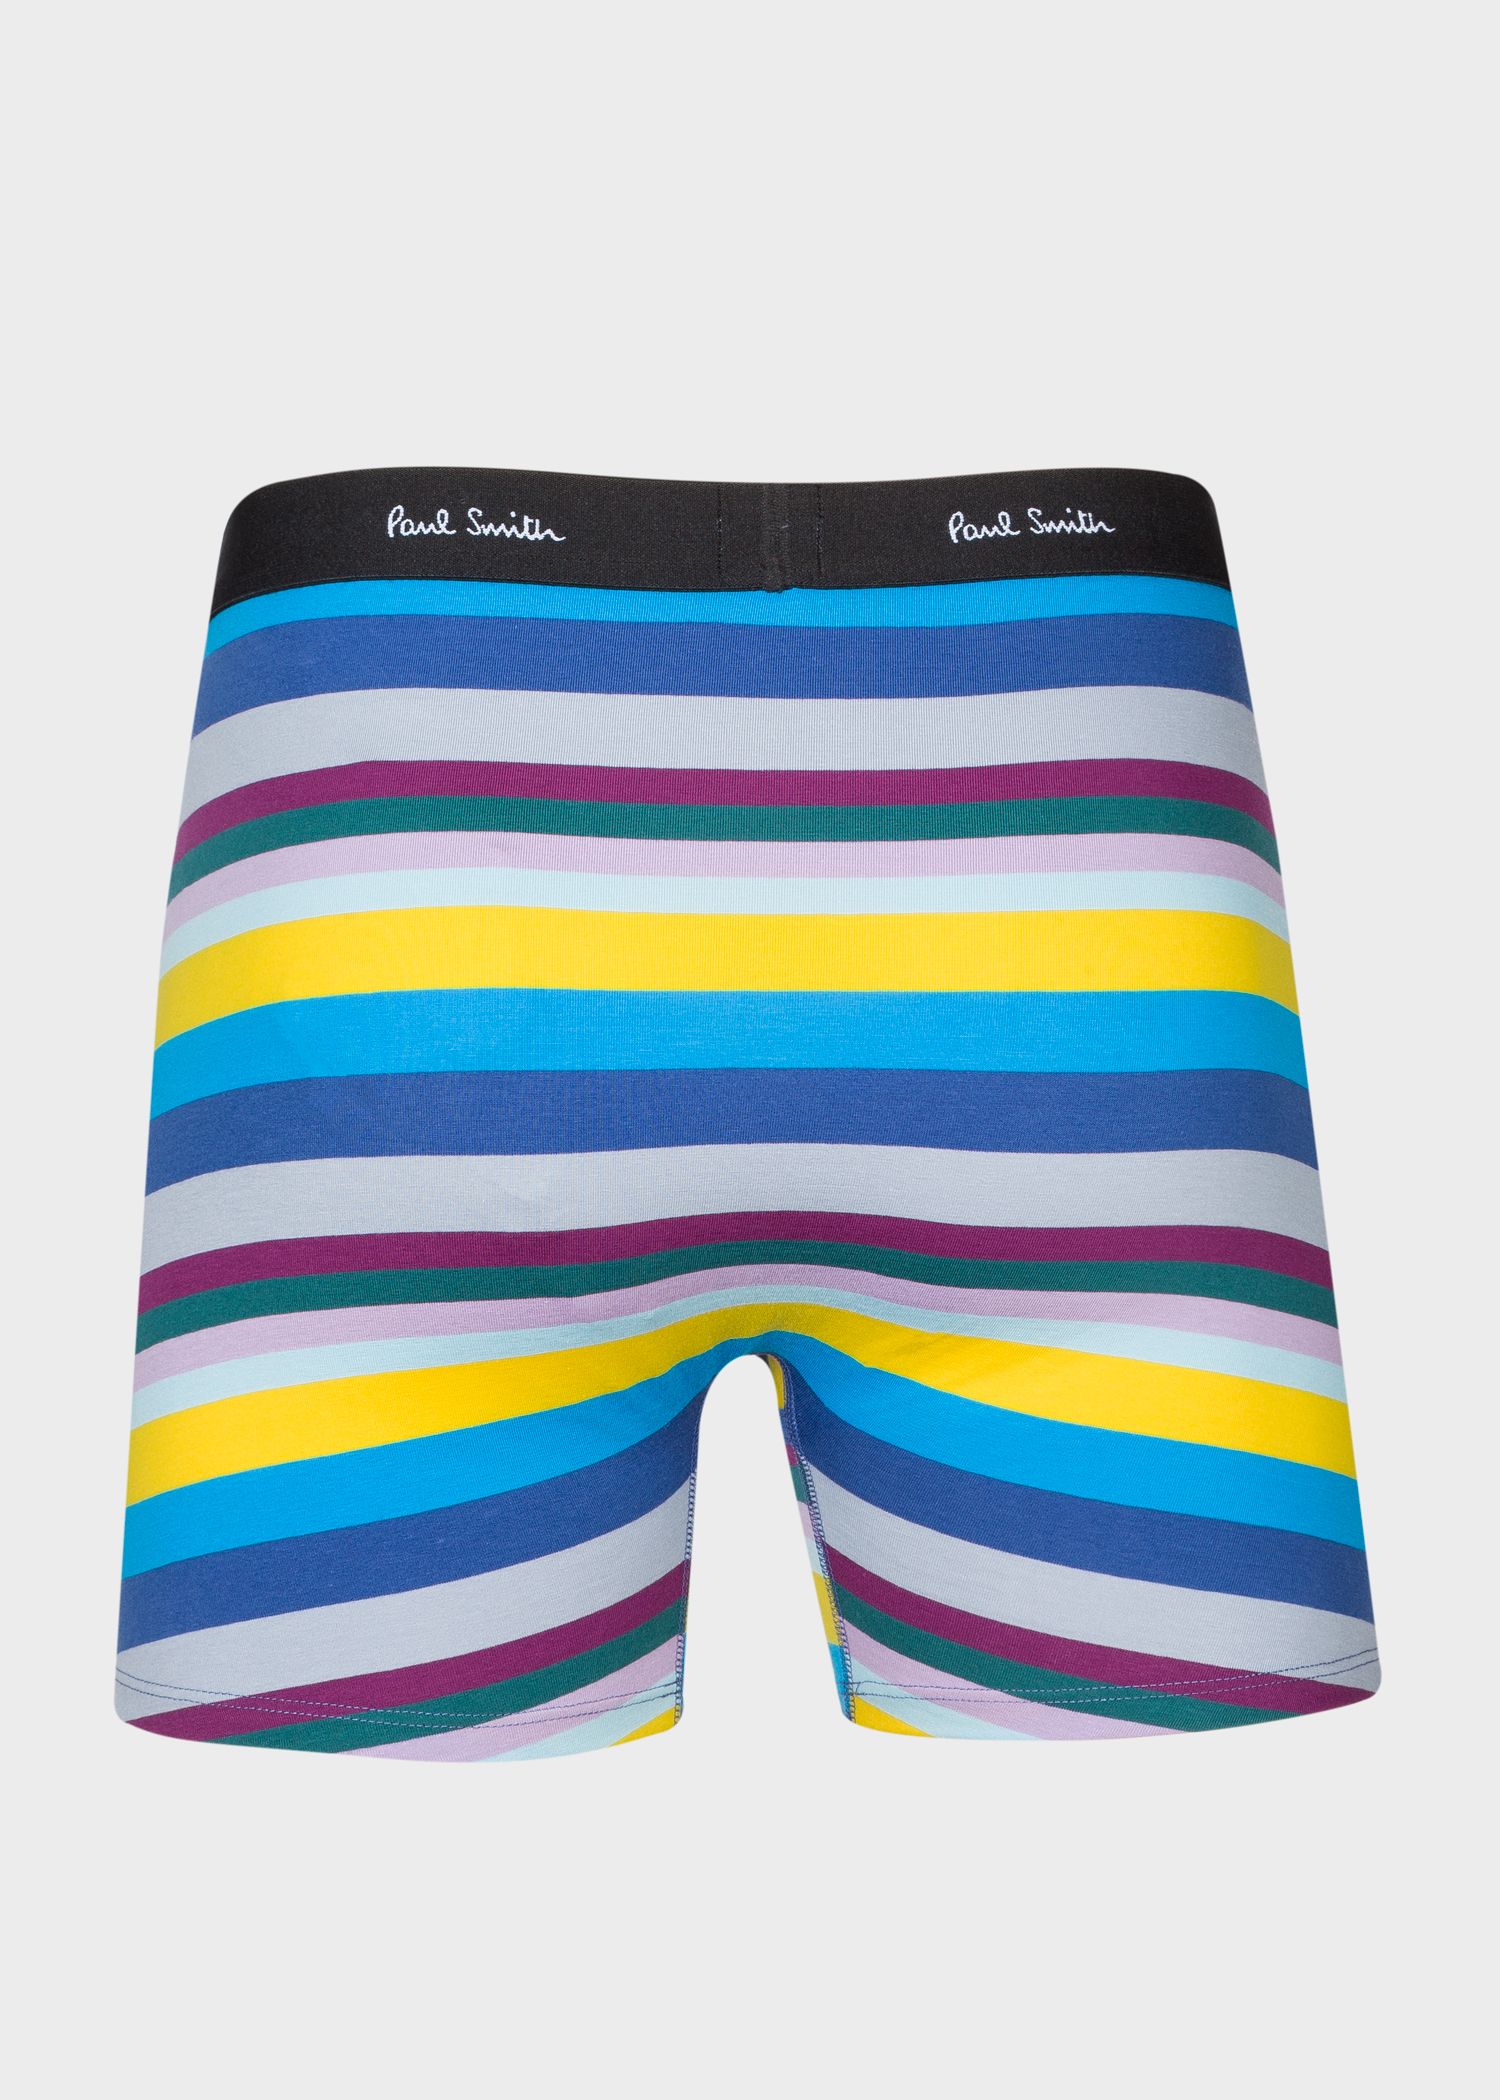 PAUL SMITH blue Signature Stripe low rise boxer briefs boxer shorts XL